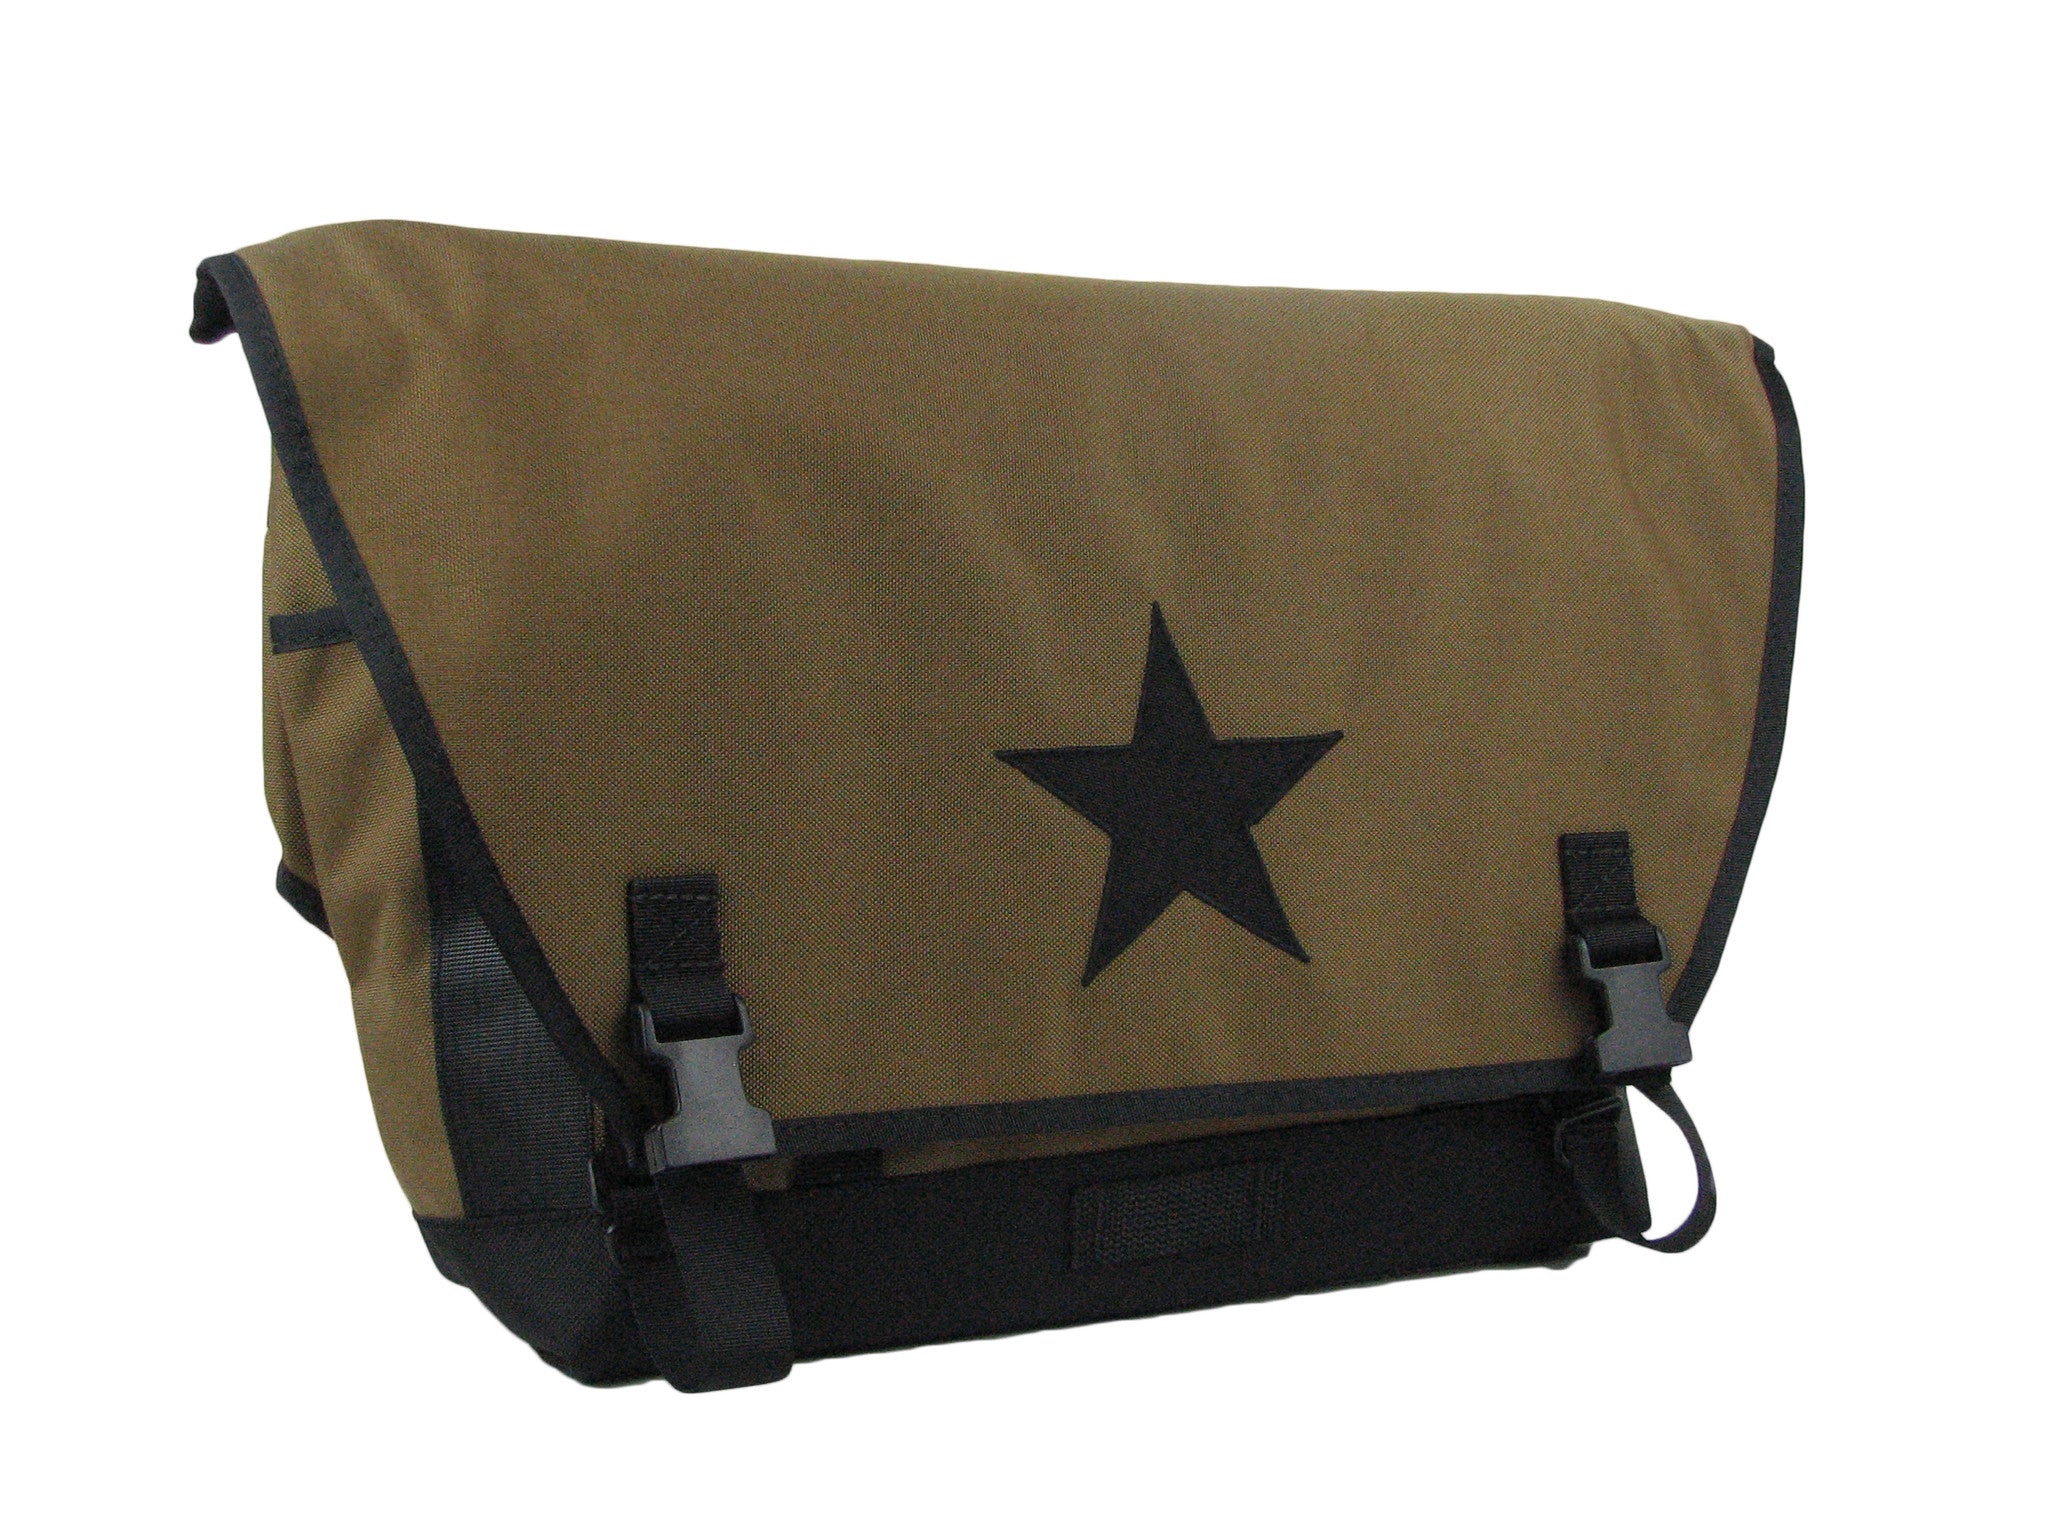 Coyote Brown and Black Waterproof Messenger Bag